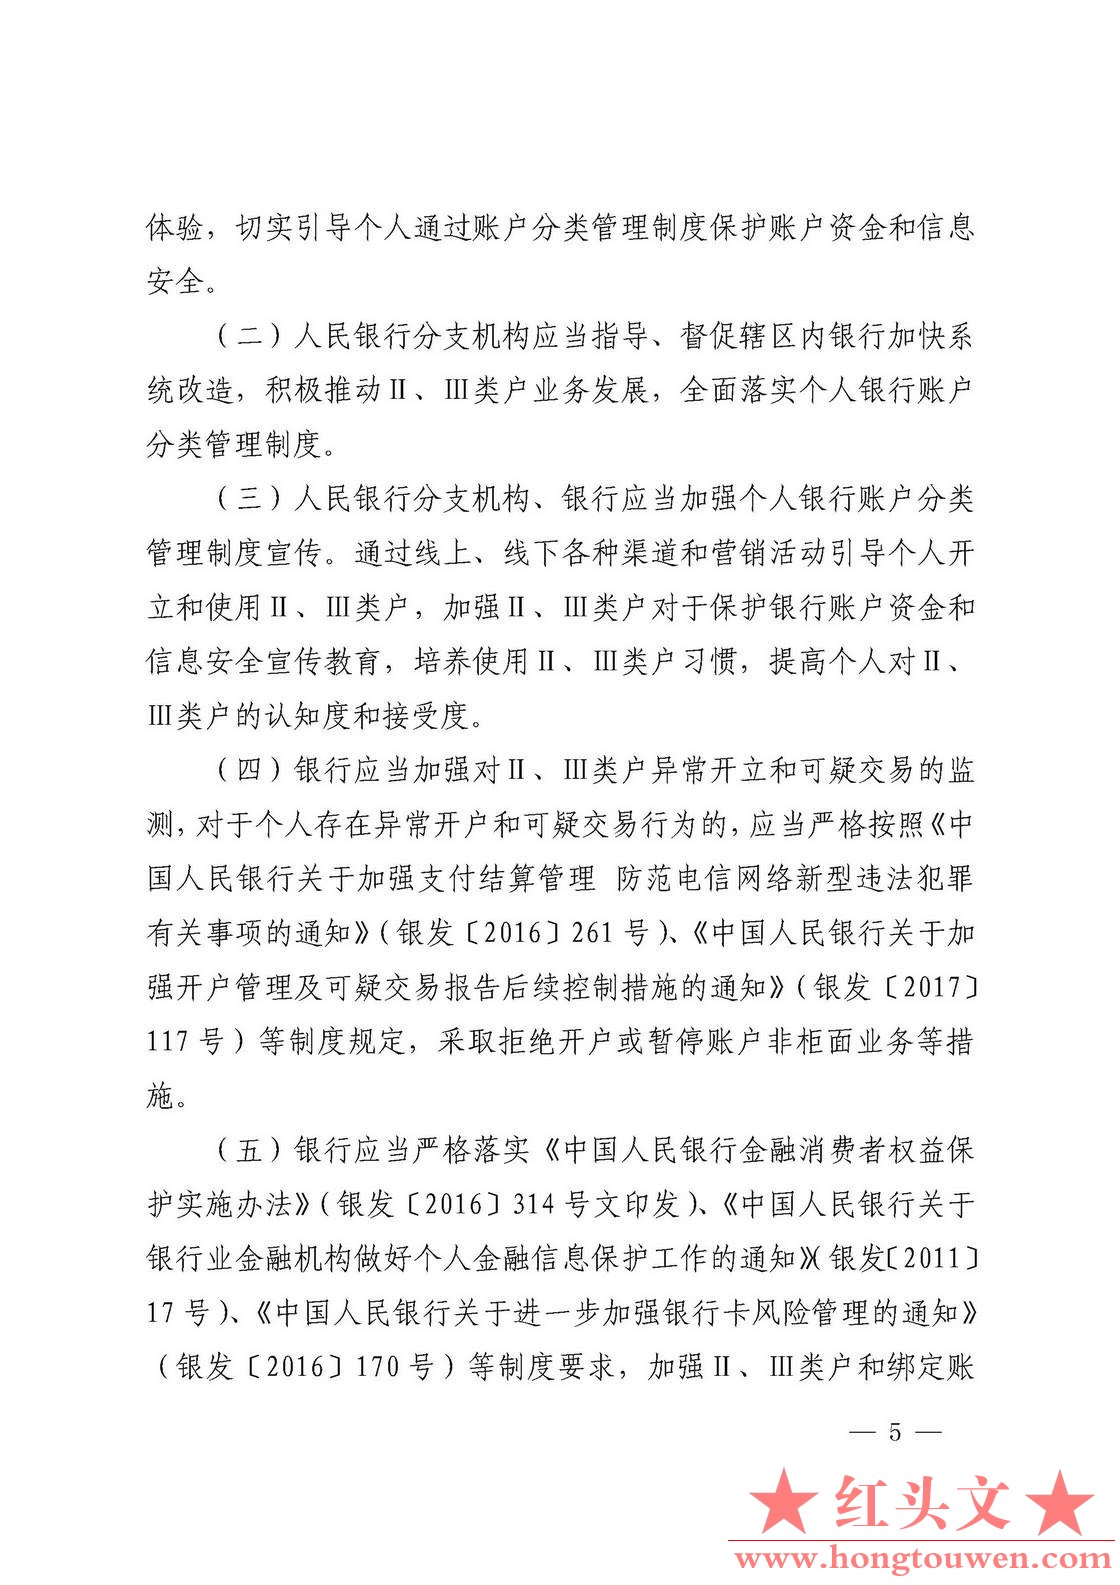 银发[2018]16号-中国人民银行关于改进个人银行账户分类管理有关事项的通知_页面_5.jpg.jpg